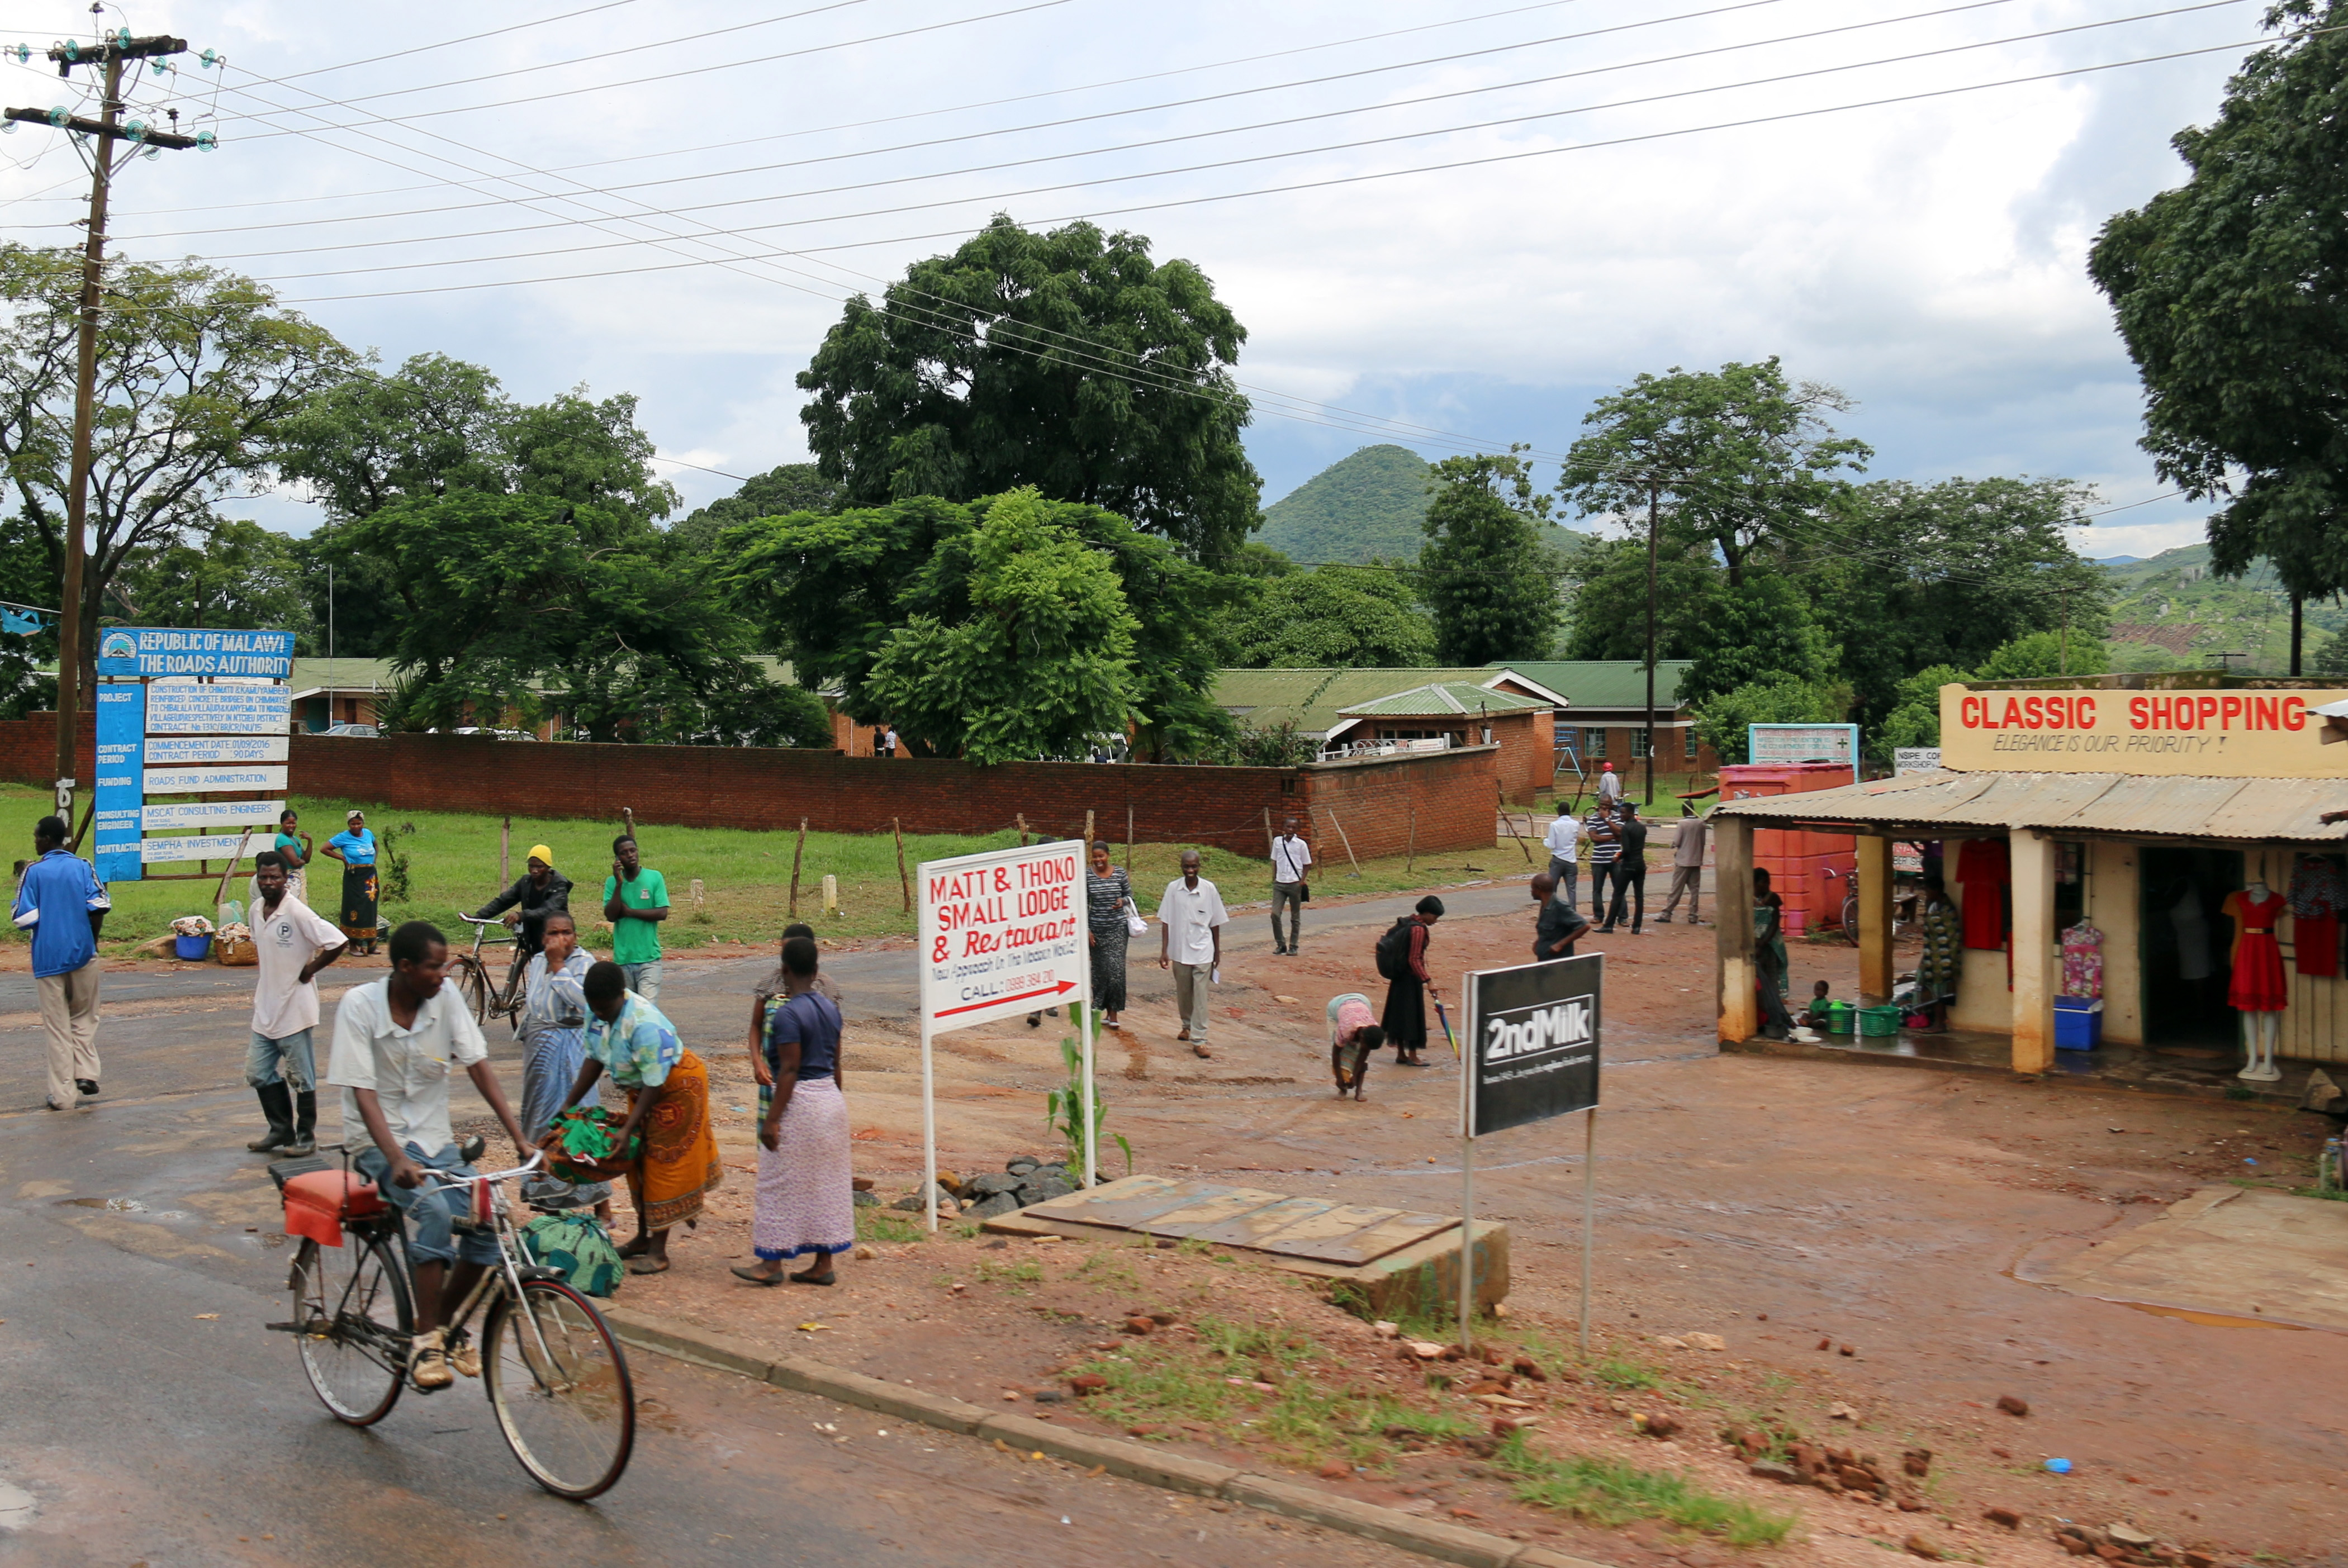 Street scene in Malawi